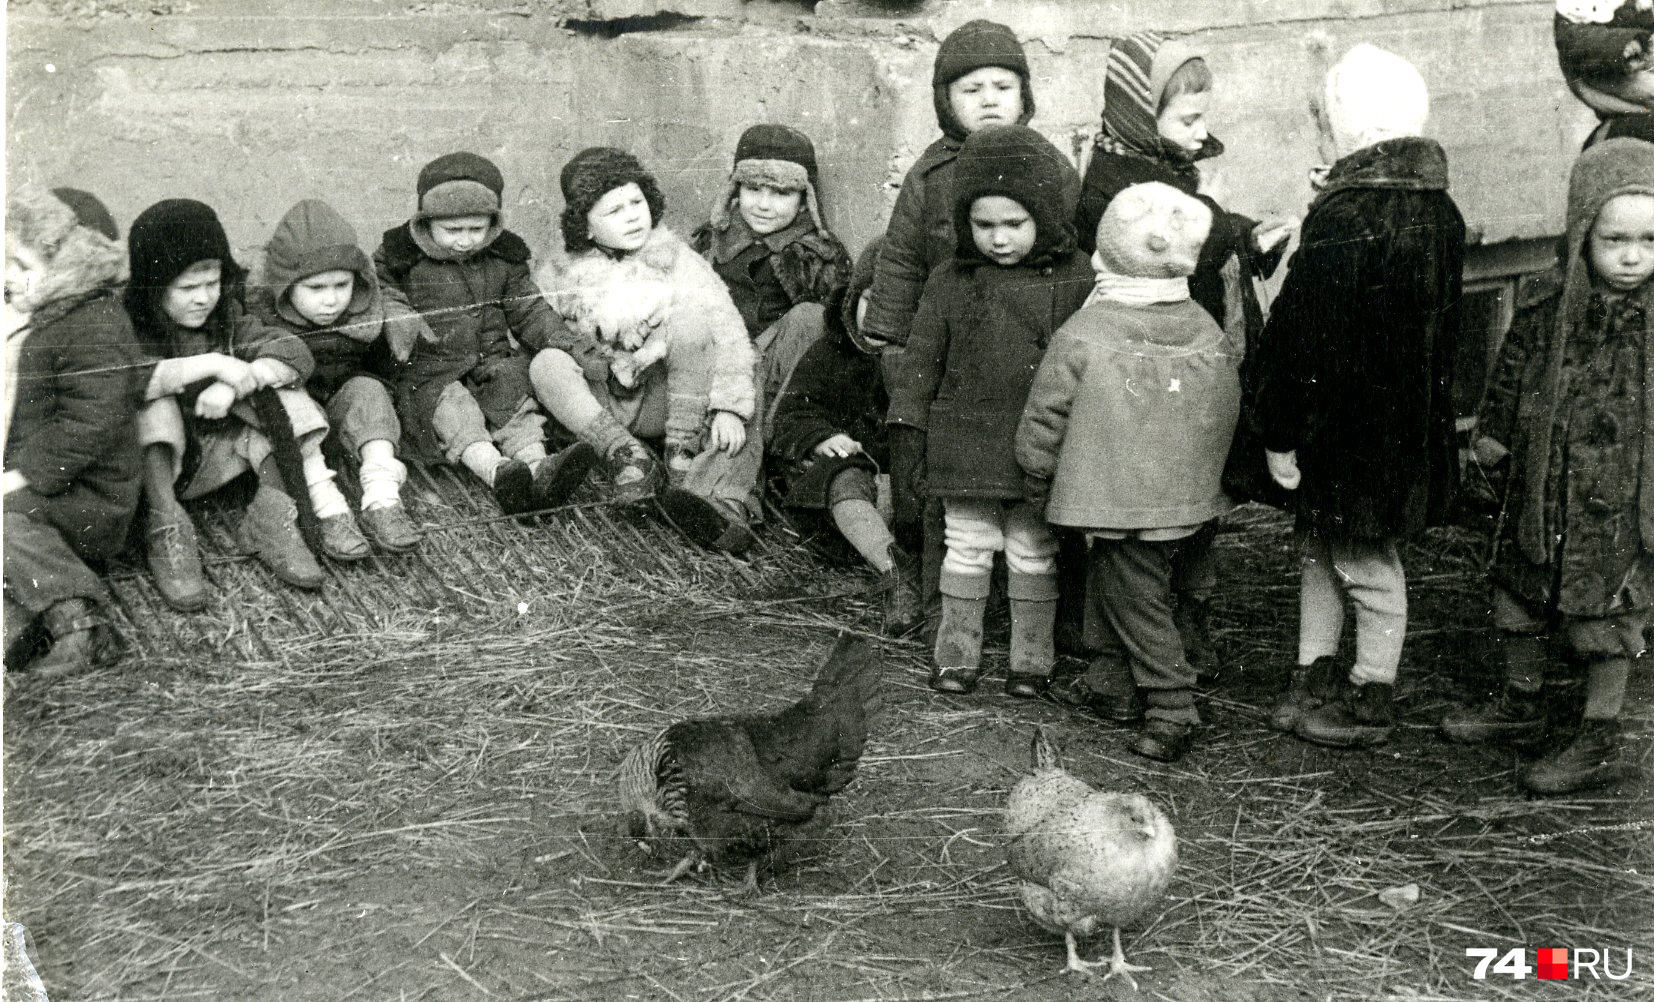 Вот снимок эвакуированных из Ленинграда малышей. Уезжая, семьи брали только самое необходимое. И для кого-то самым дорогим оказывались книги 